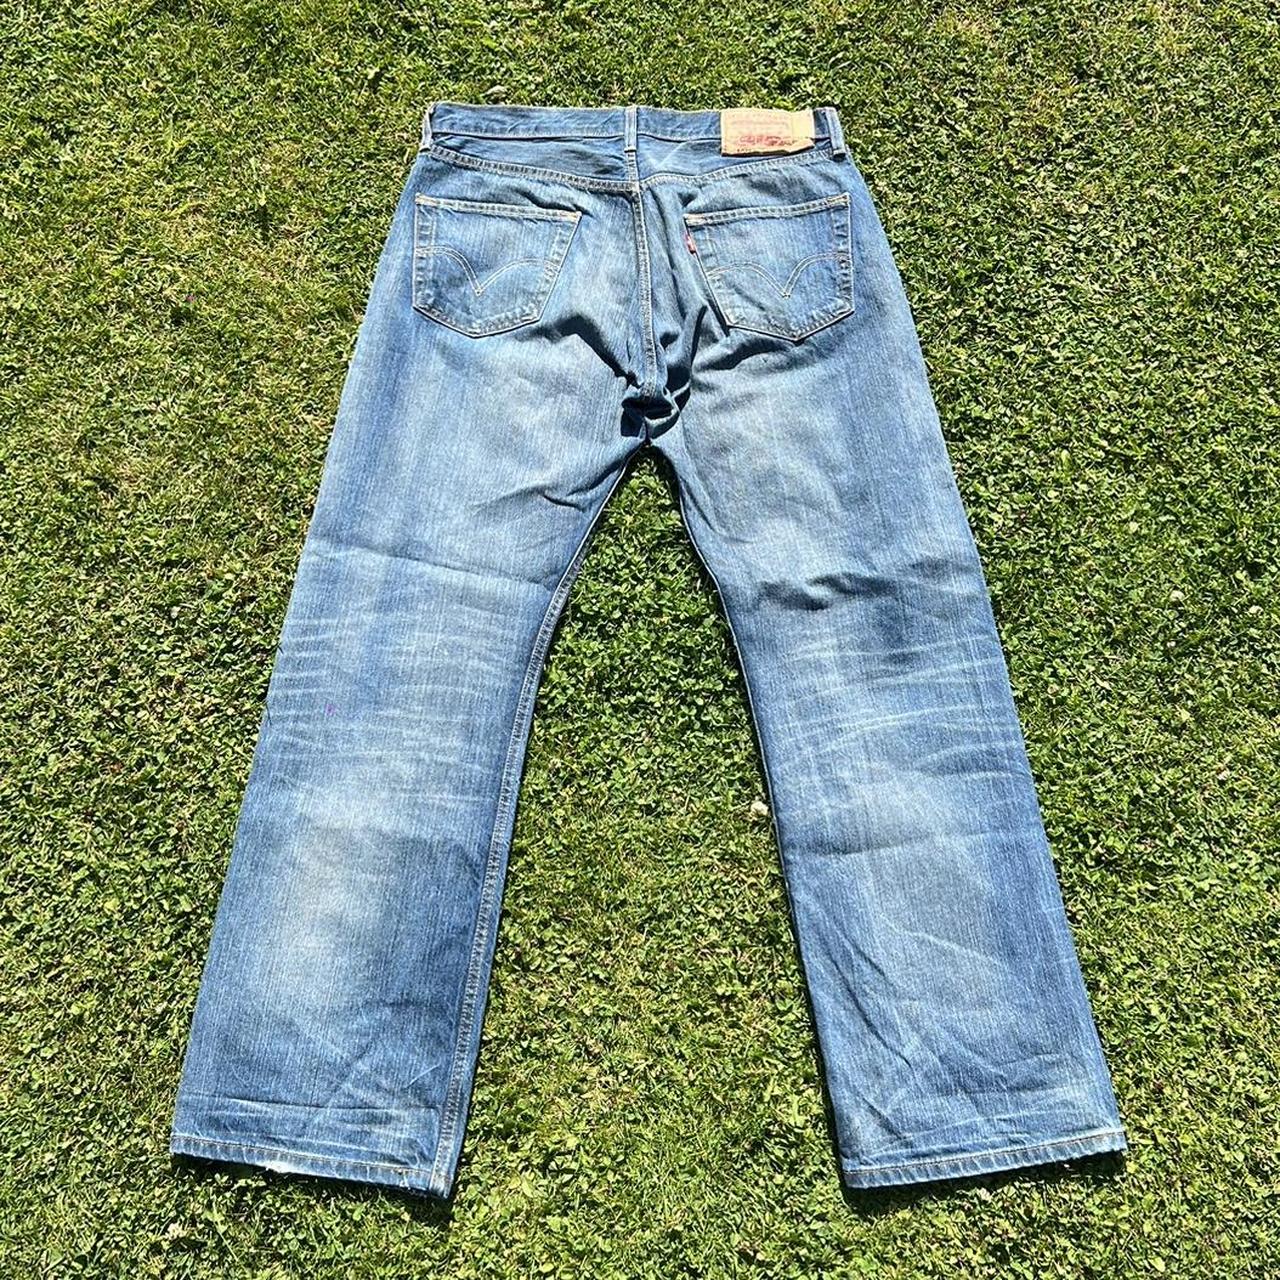 Levi’s 501 light denim jeans 👖 - great vintage... - Depop